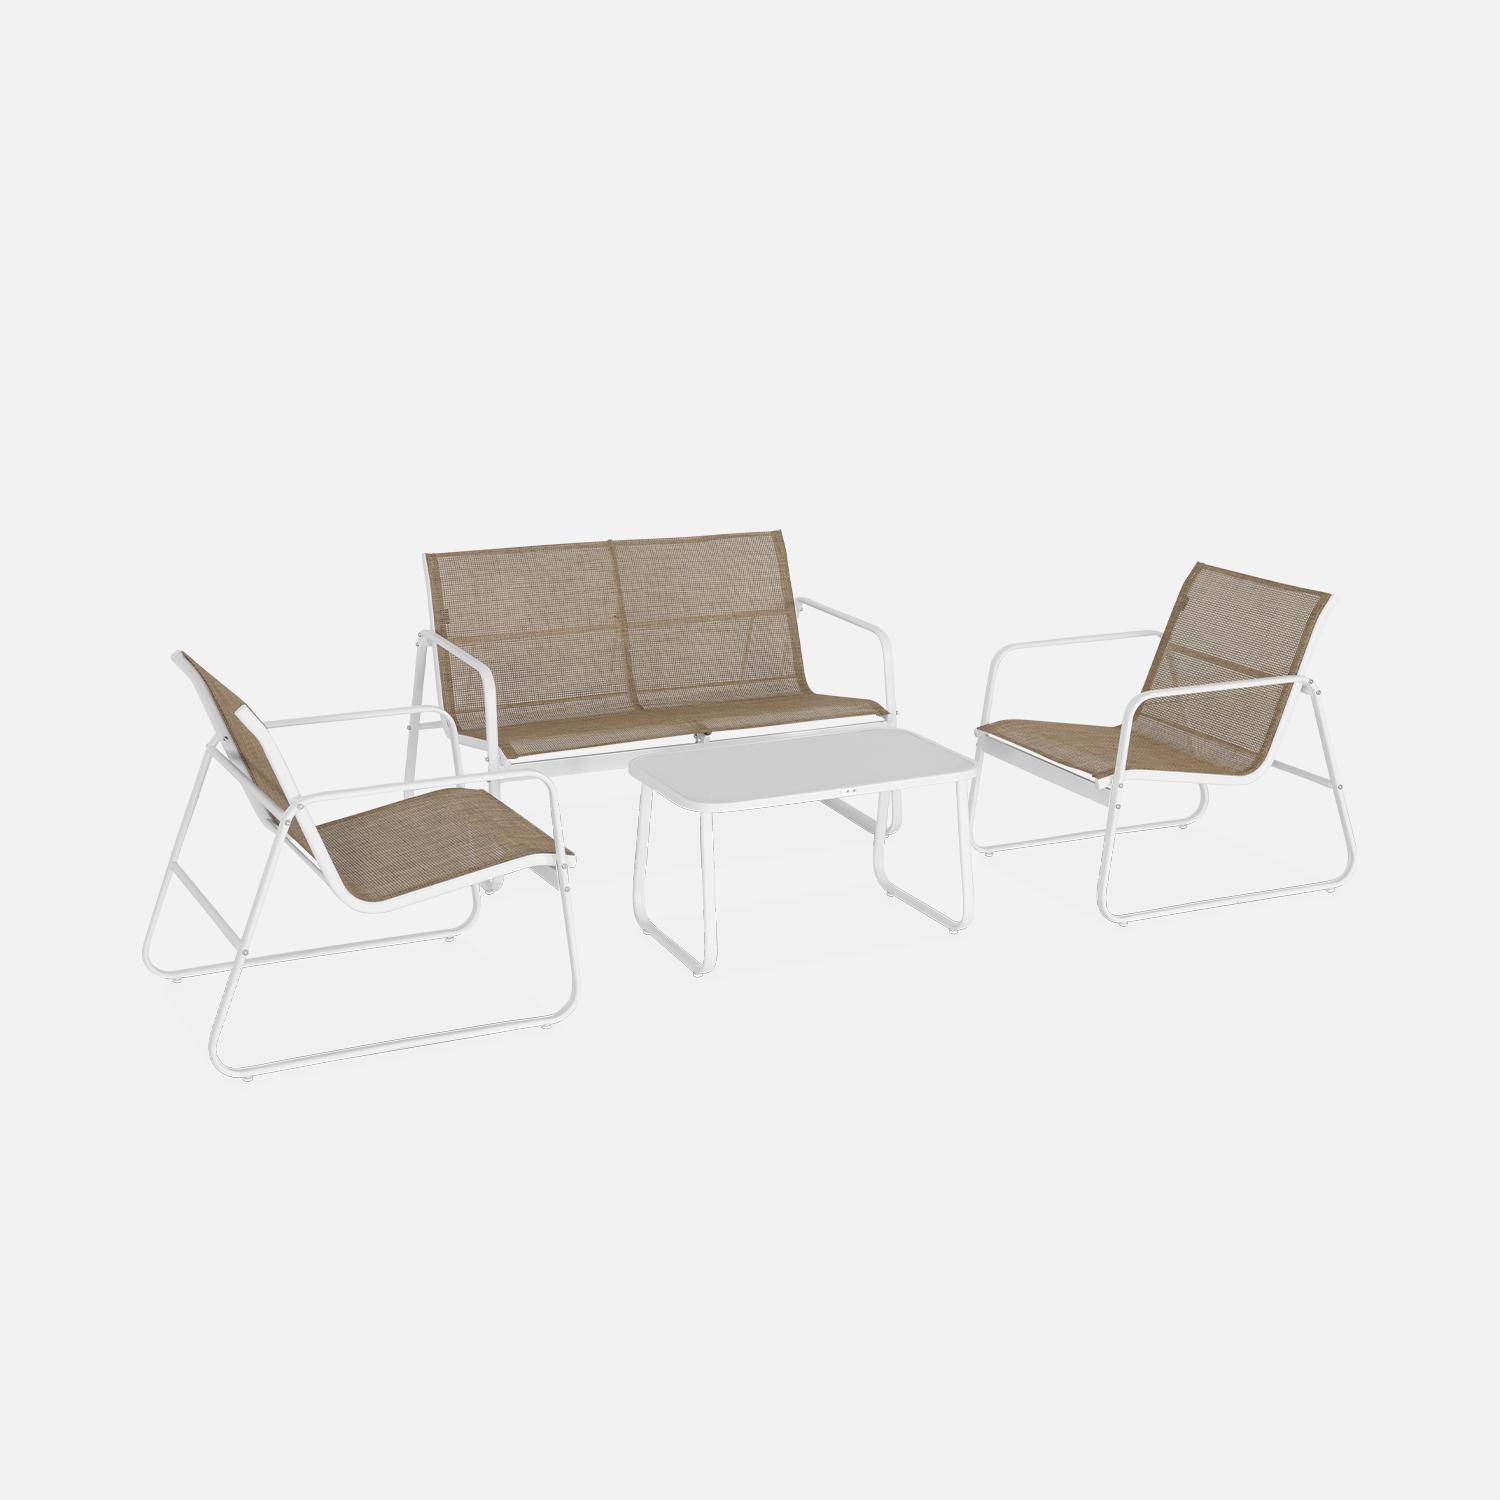 Mobiliario de jardín de metal y textilene para 4 personas, blanco y natural, diseño Photo3